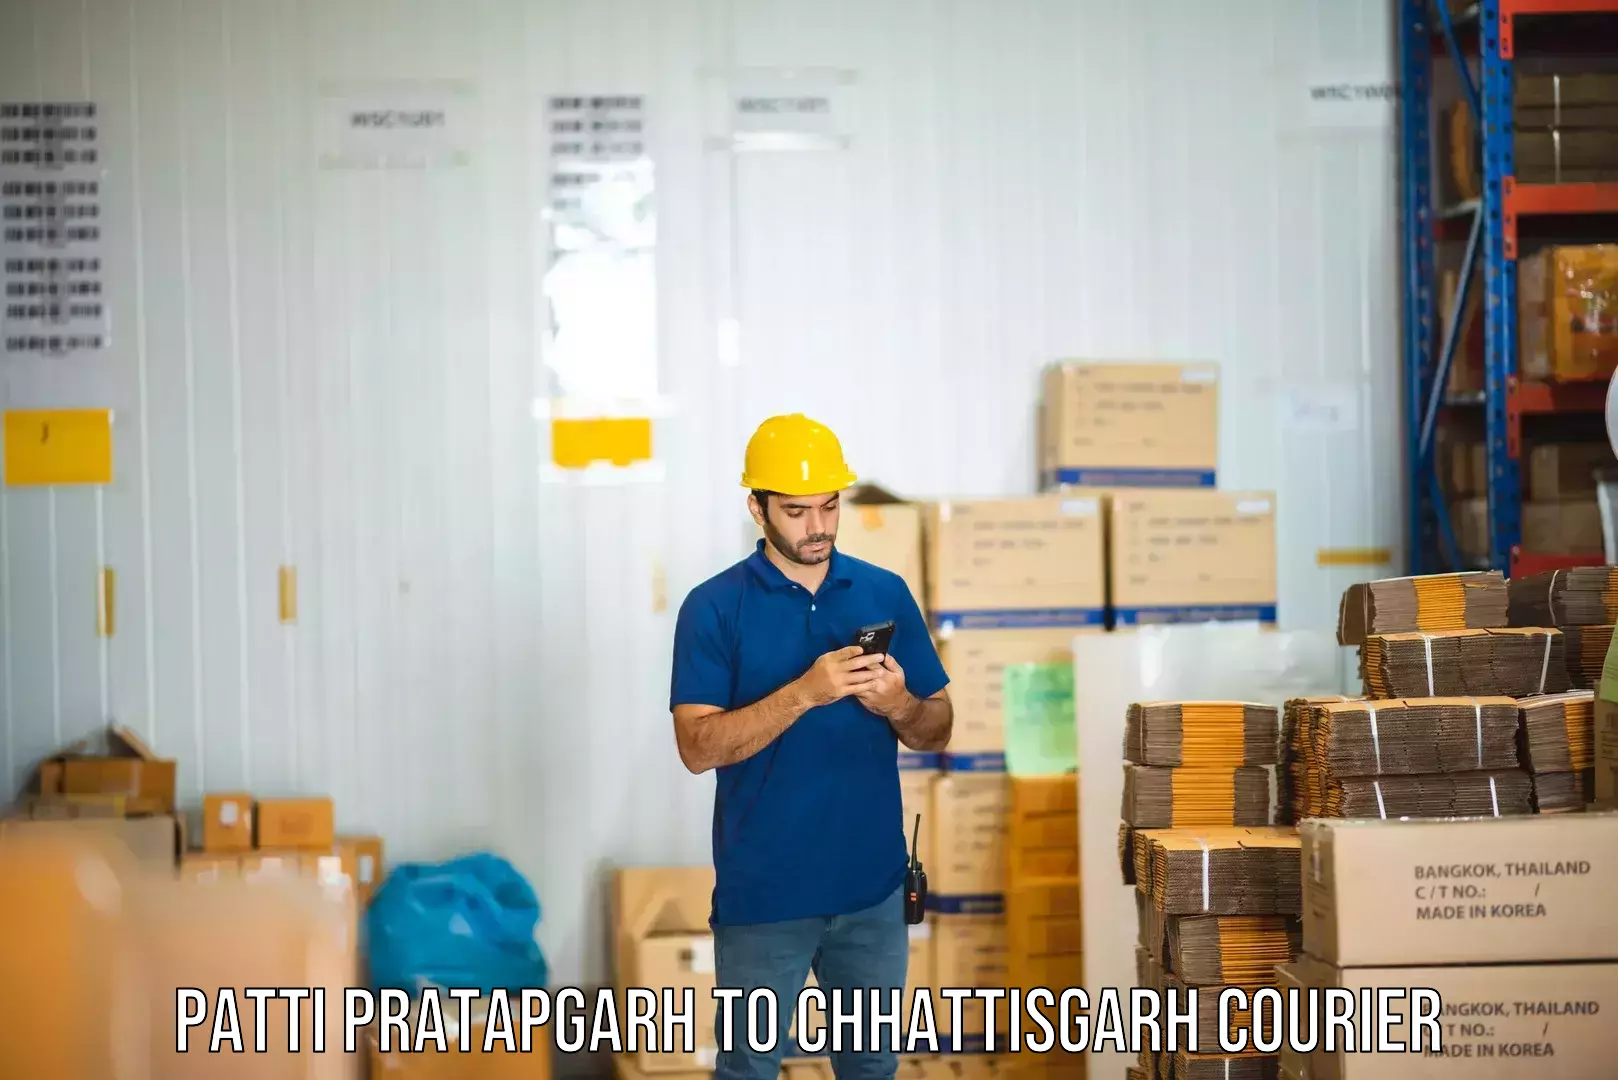 Innovative courier solutions Patti Pratapgarh to Sakti